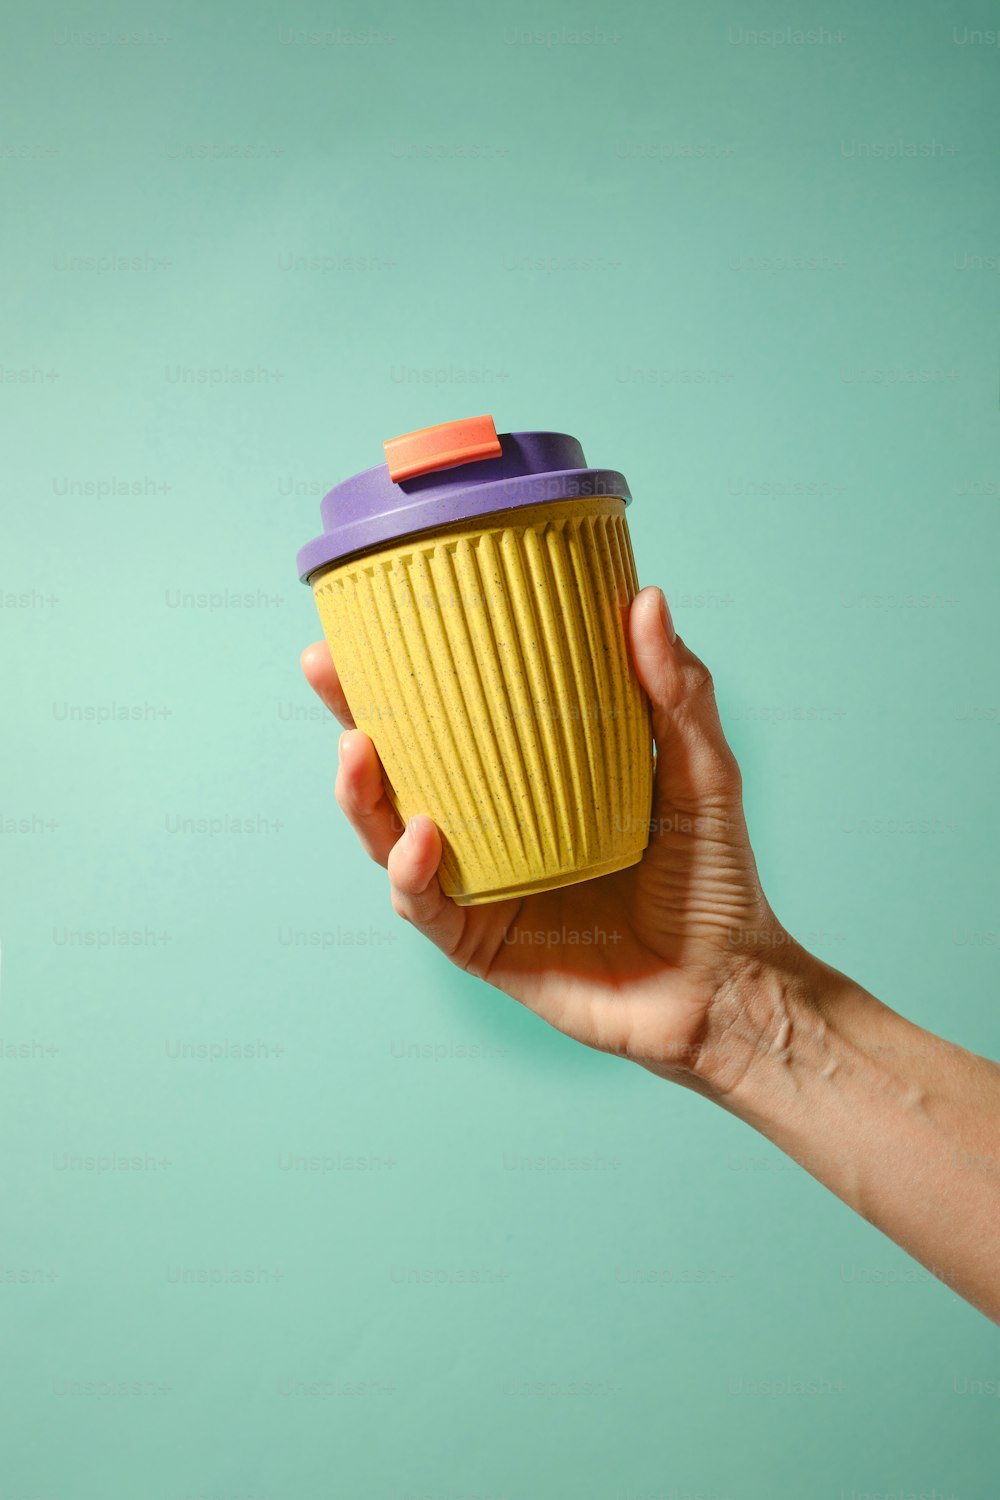 una mano sosteniendo una taza amarilla con una tapa púrpura